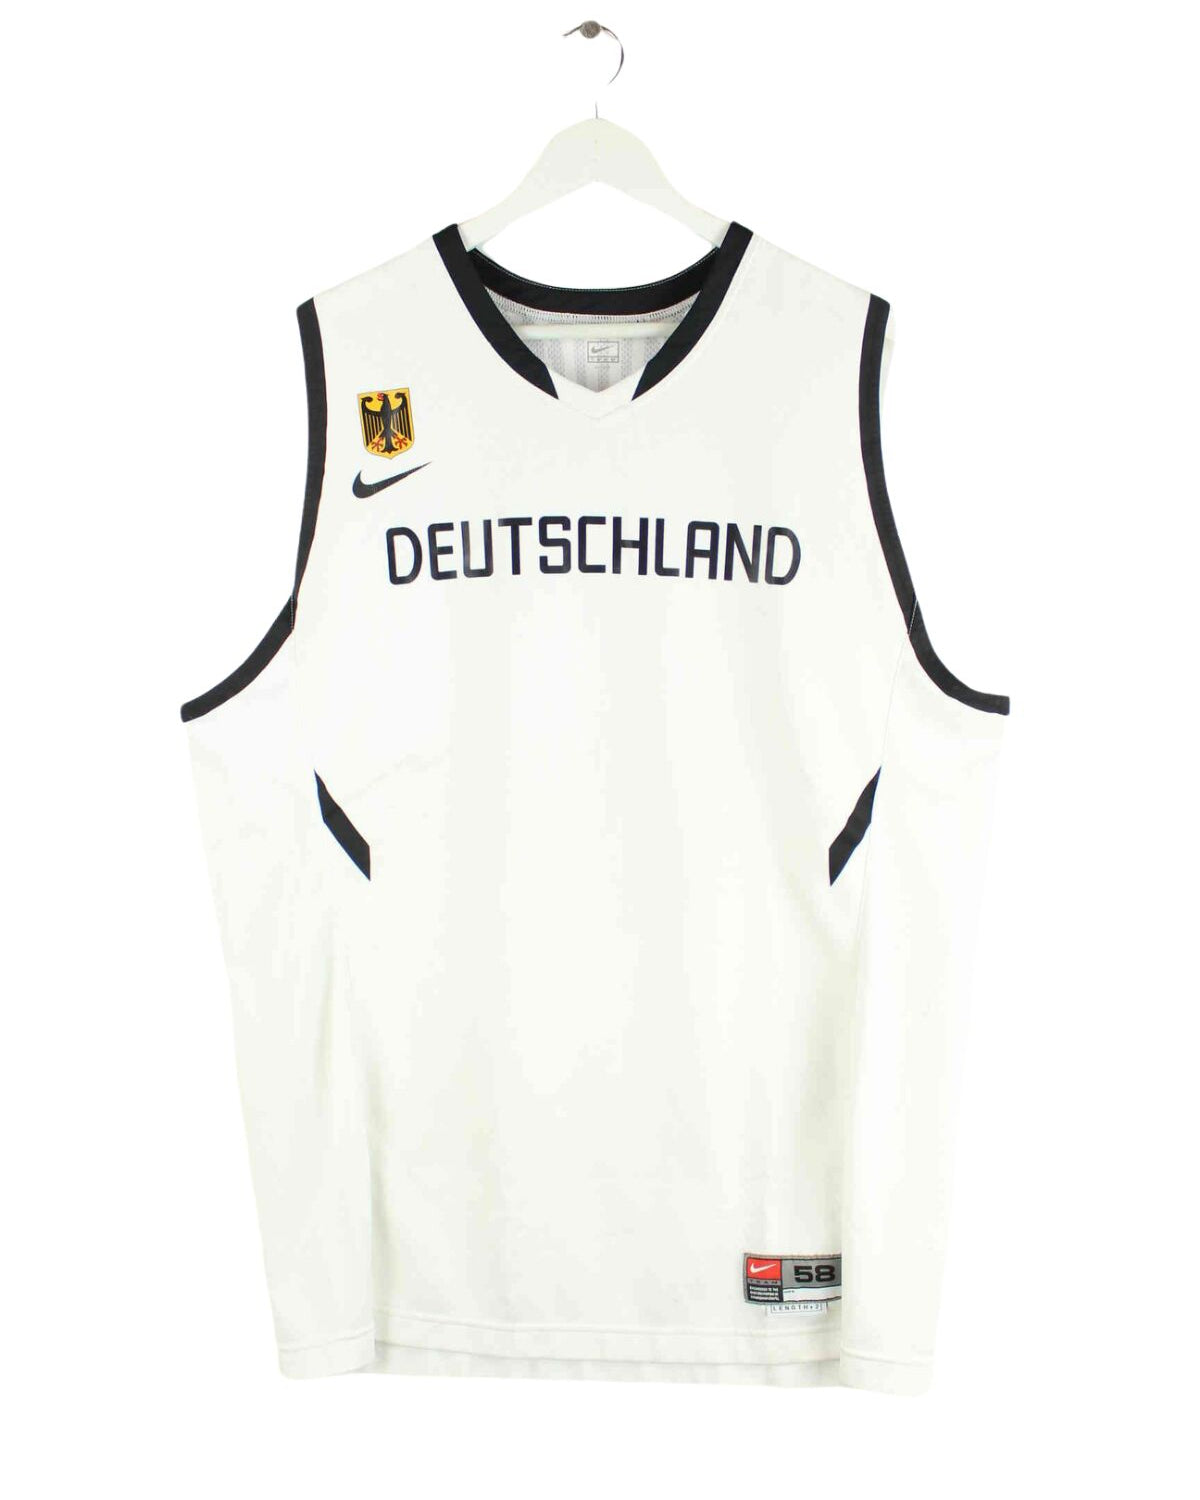 Nike Deiutschland Jersey Weiß XXL (front image)